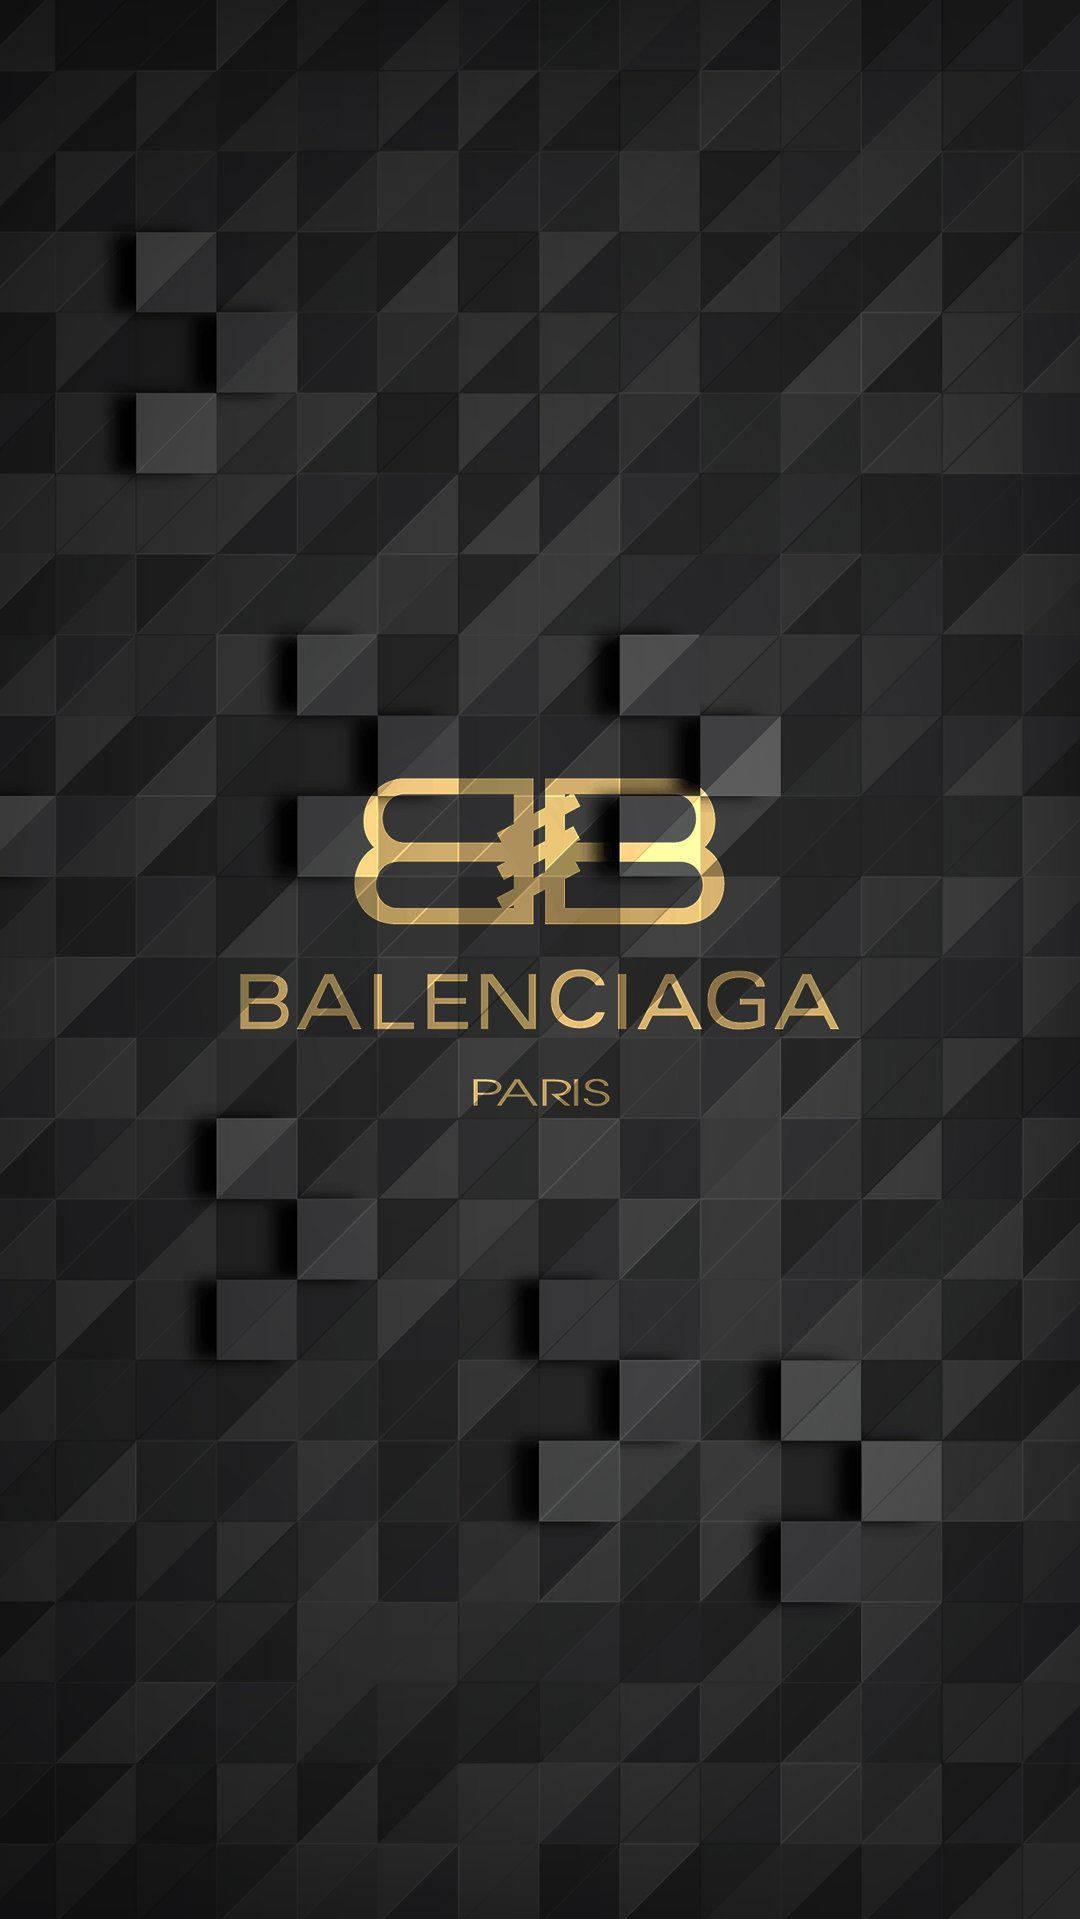 Download Balenciaga Paris Pixelated Wallpaper